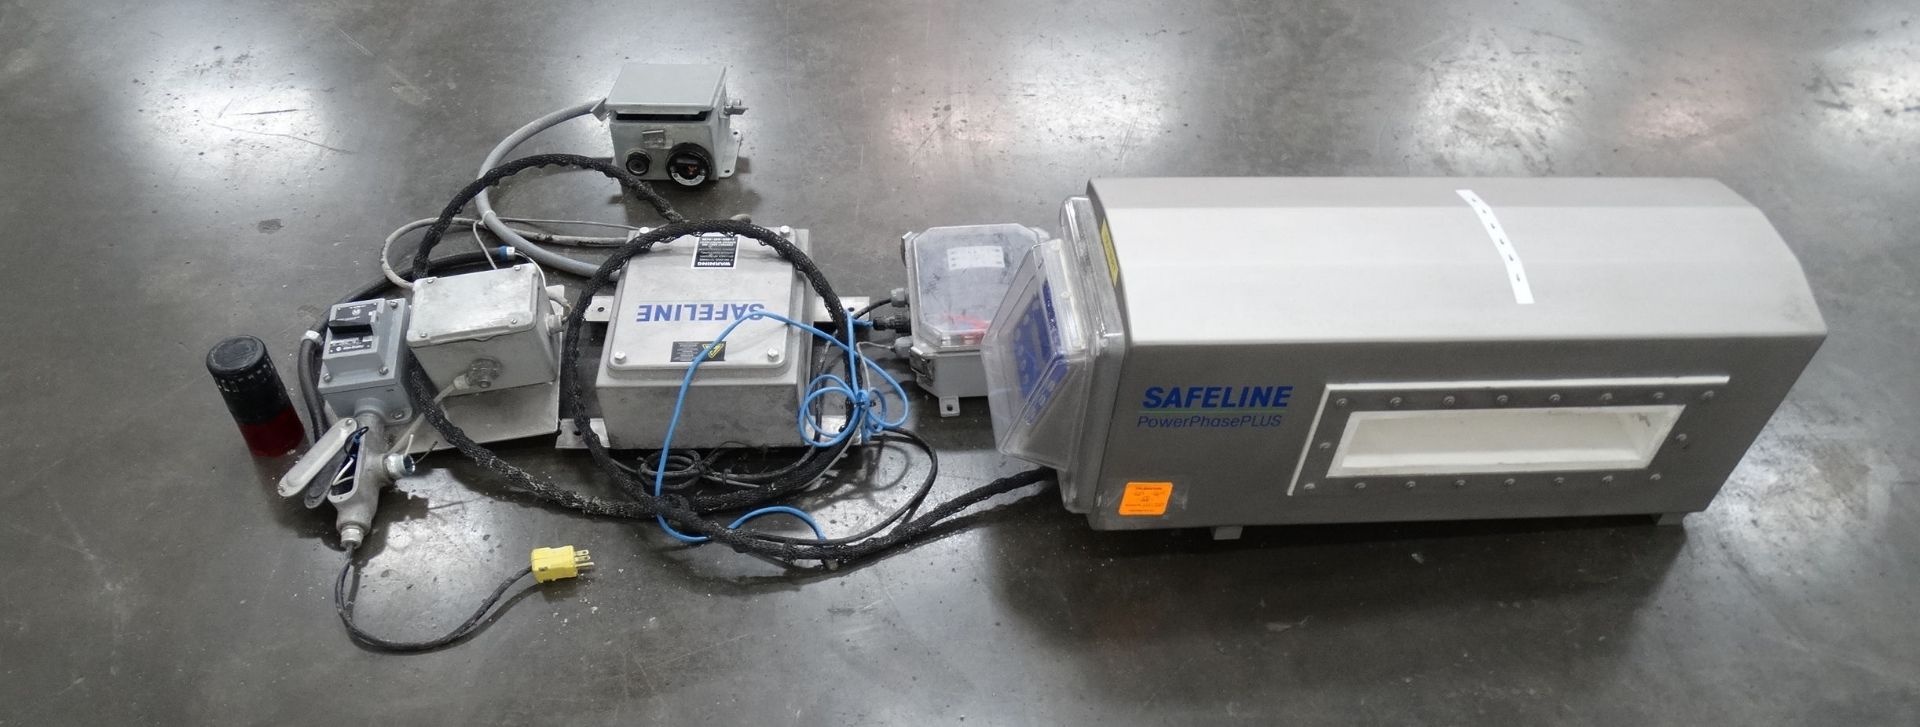 Safeline Powerphase Plus Metal Detector Head - Image 4 of 6